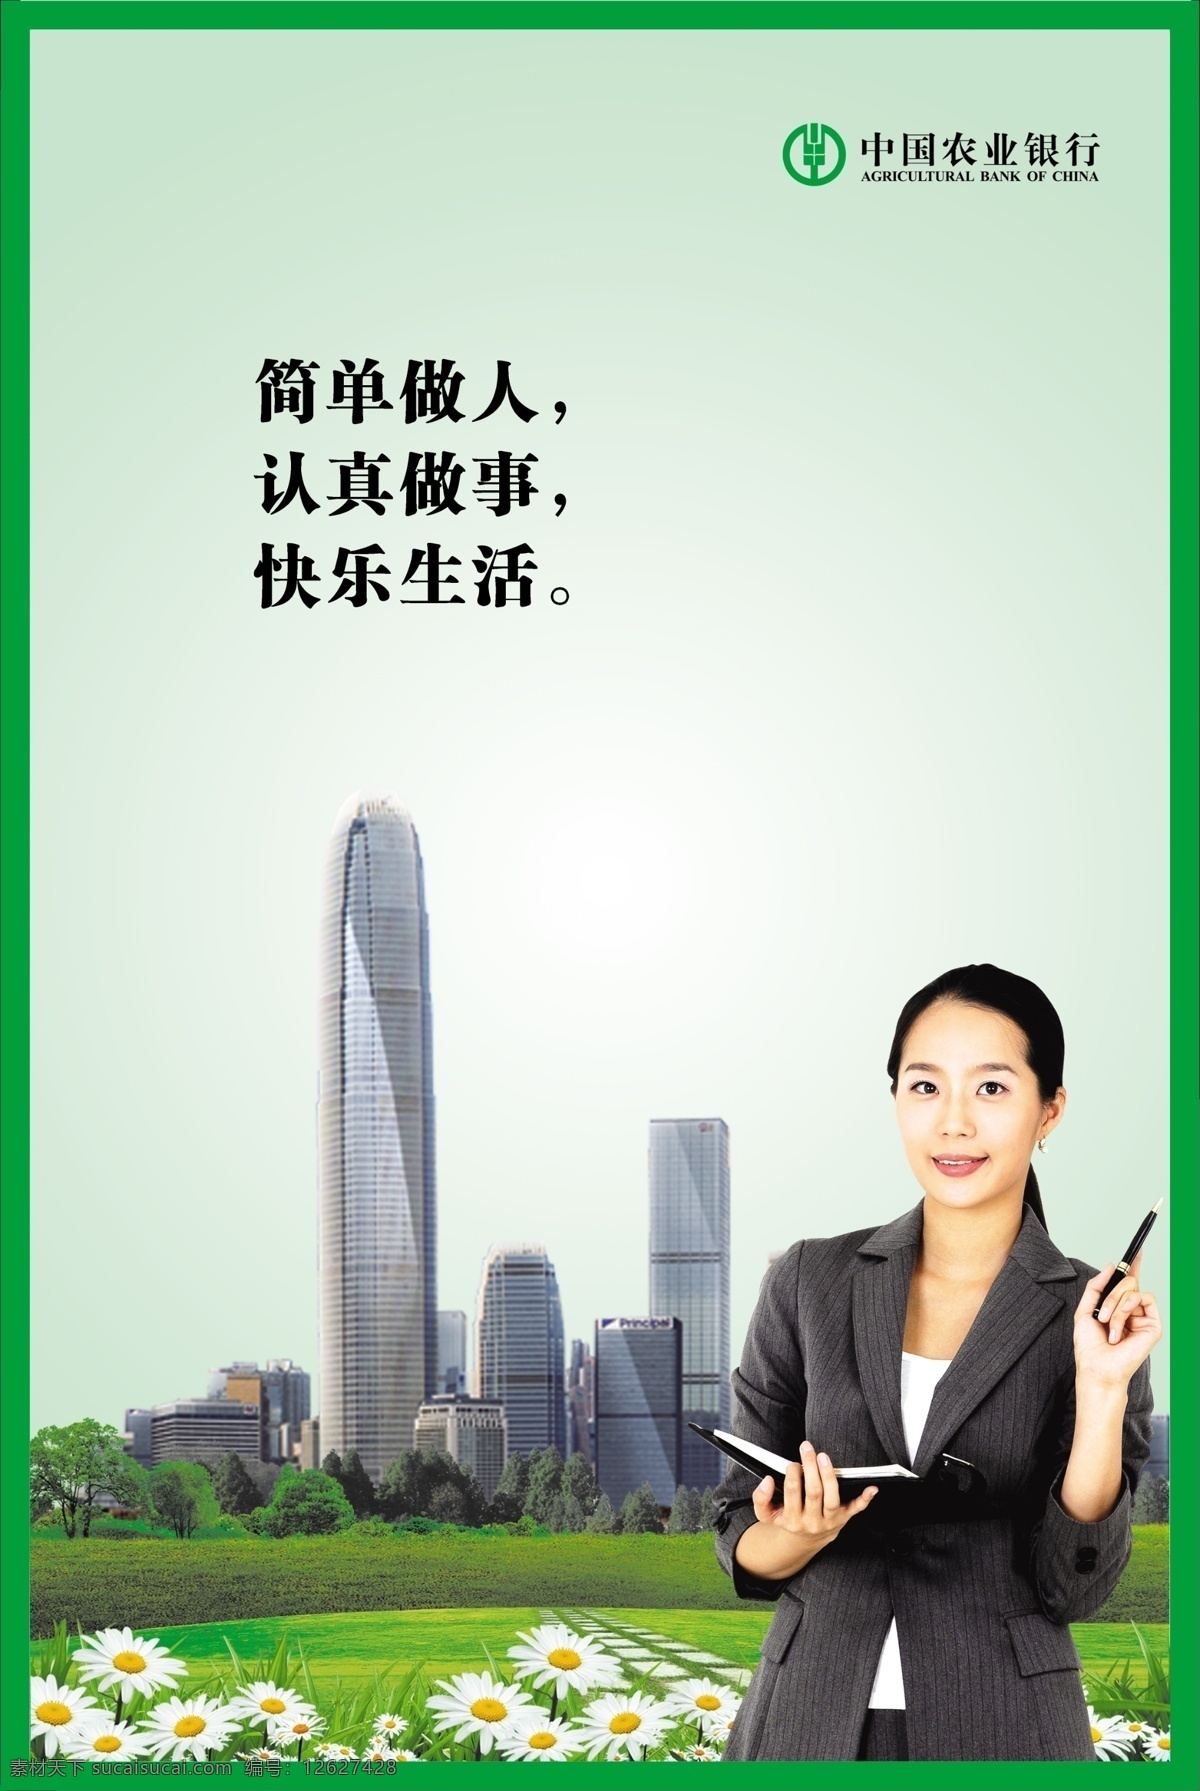 农行形象广告 中国农业银行 简单 做人 认真 做事 快乐 生活 展板 商务人士 城市 草地 花草 展板模板 广告设计模板 源文件